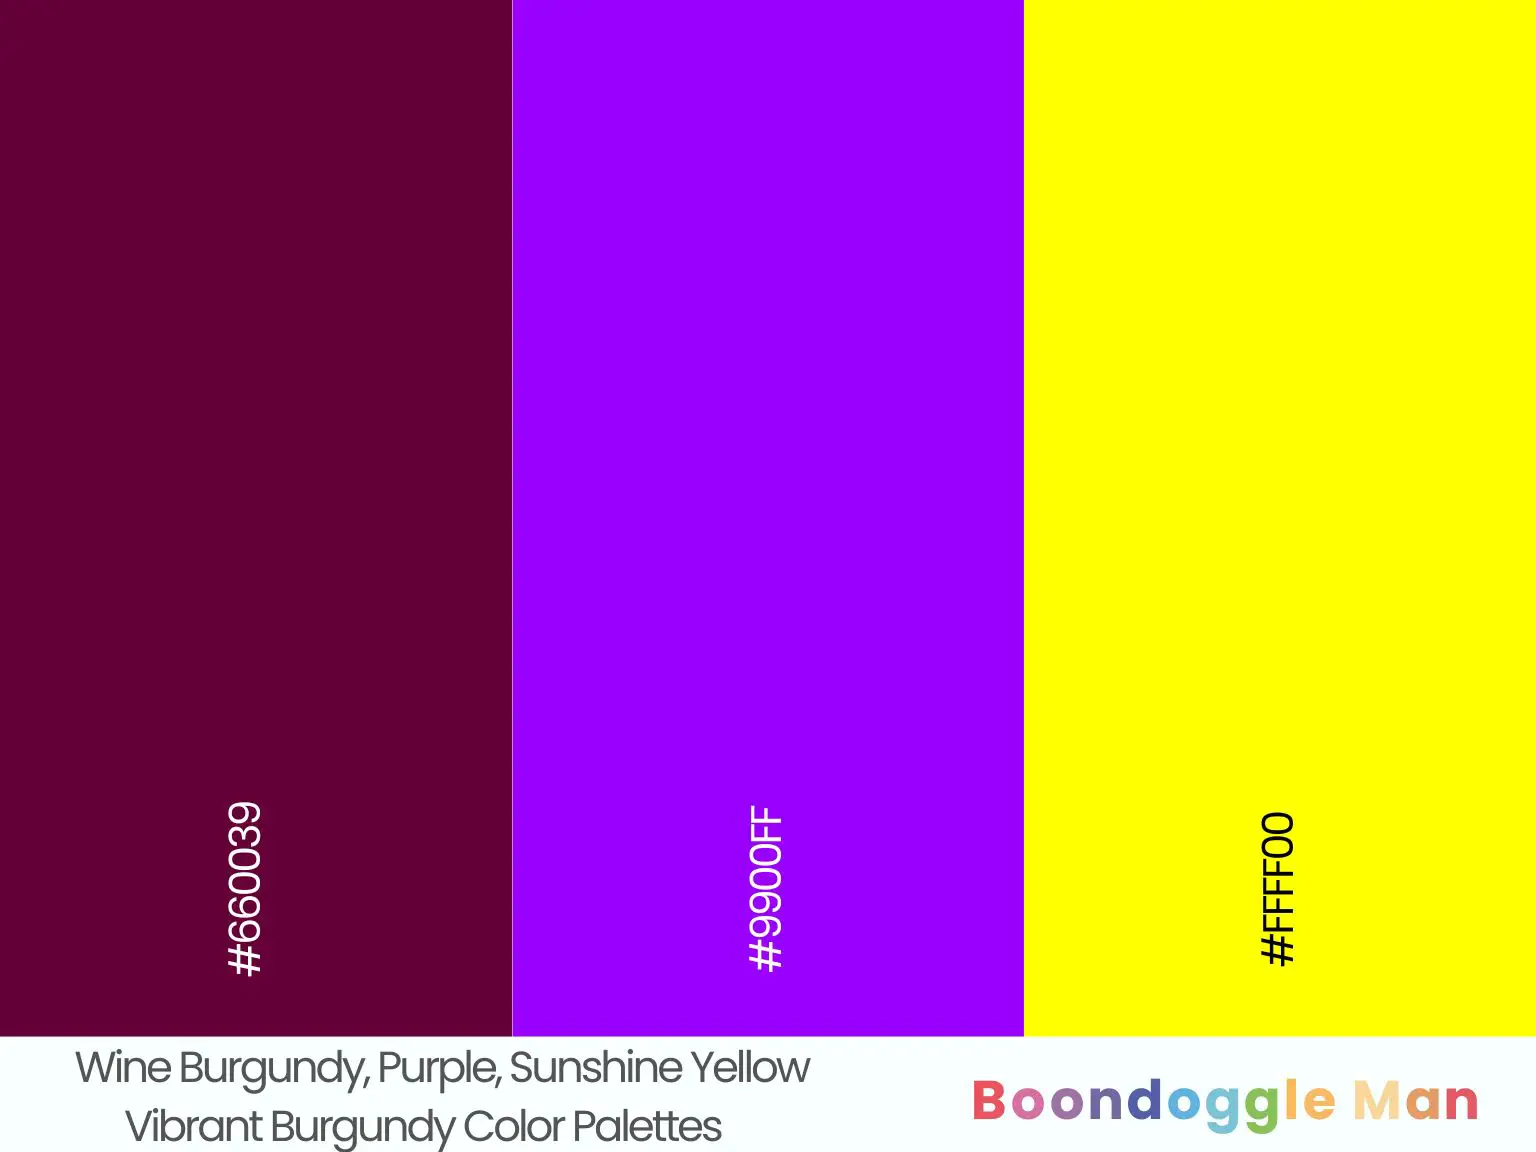 Wine Burgundy, Purple, Sunshine Yellow